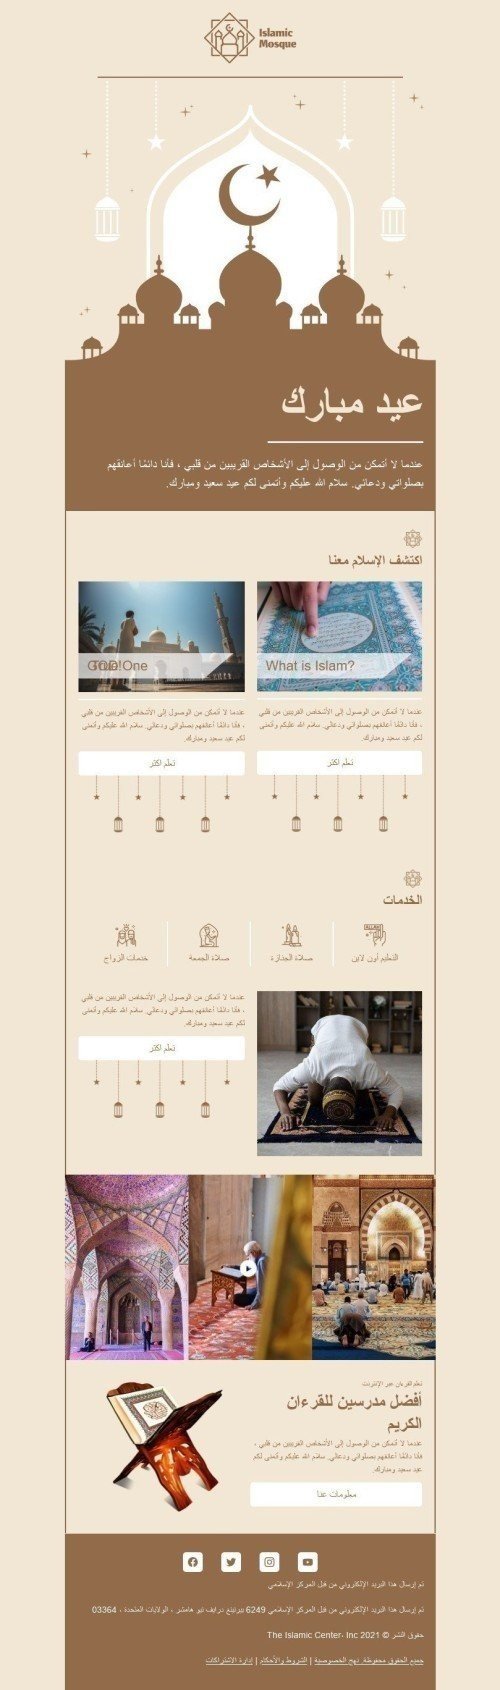 Шаблон письма к празднику Курбан-байрам «Исламская мечеть» для индустрии «Дизайн шаблонов для некоммерческих email-кампаний» дектопный вид